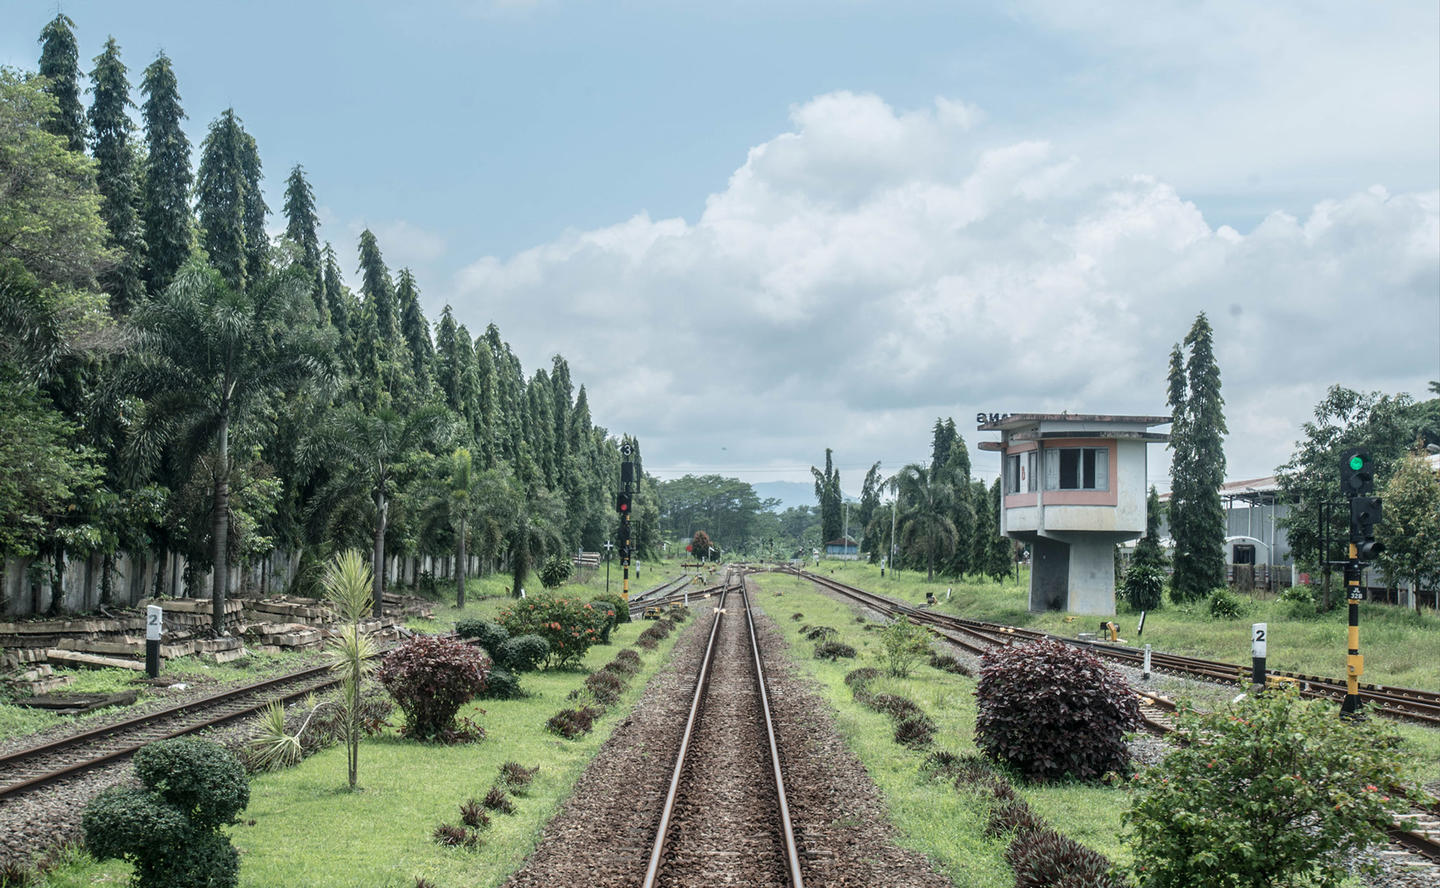 Amanjiwo, Indonesia - Railway